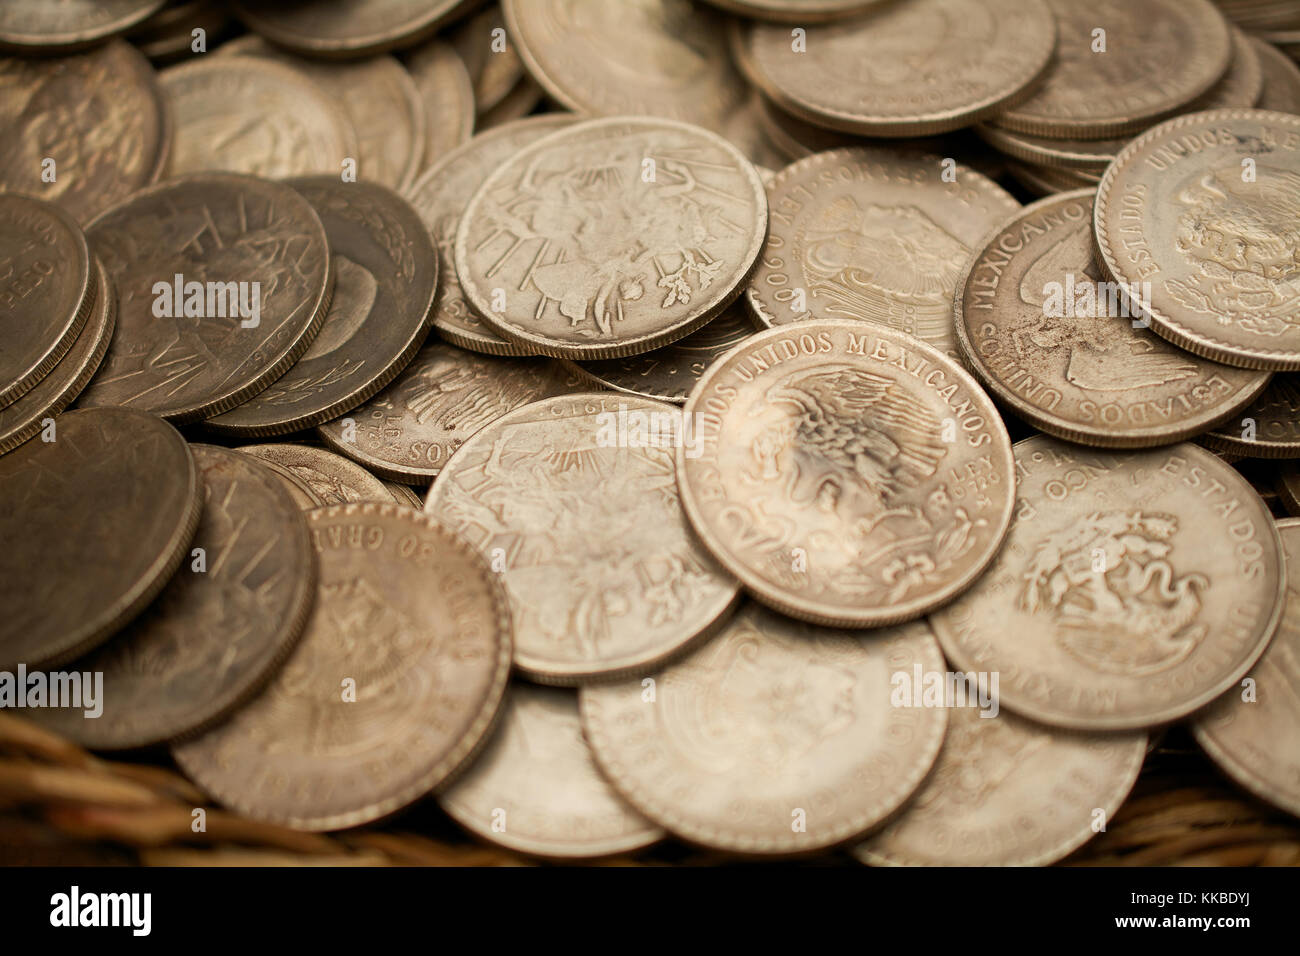 Estados Unidos Mexicanos coins - texture or background Stock Photo